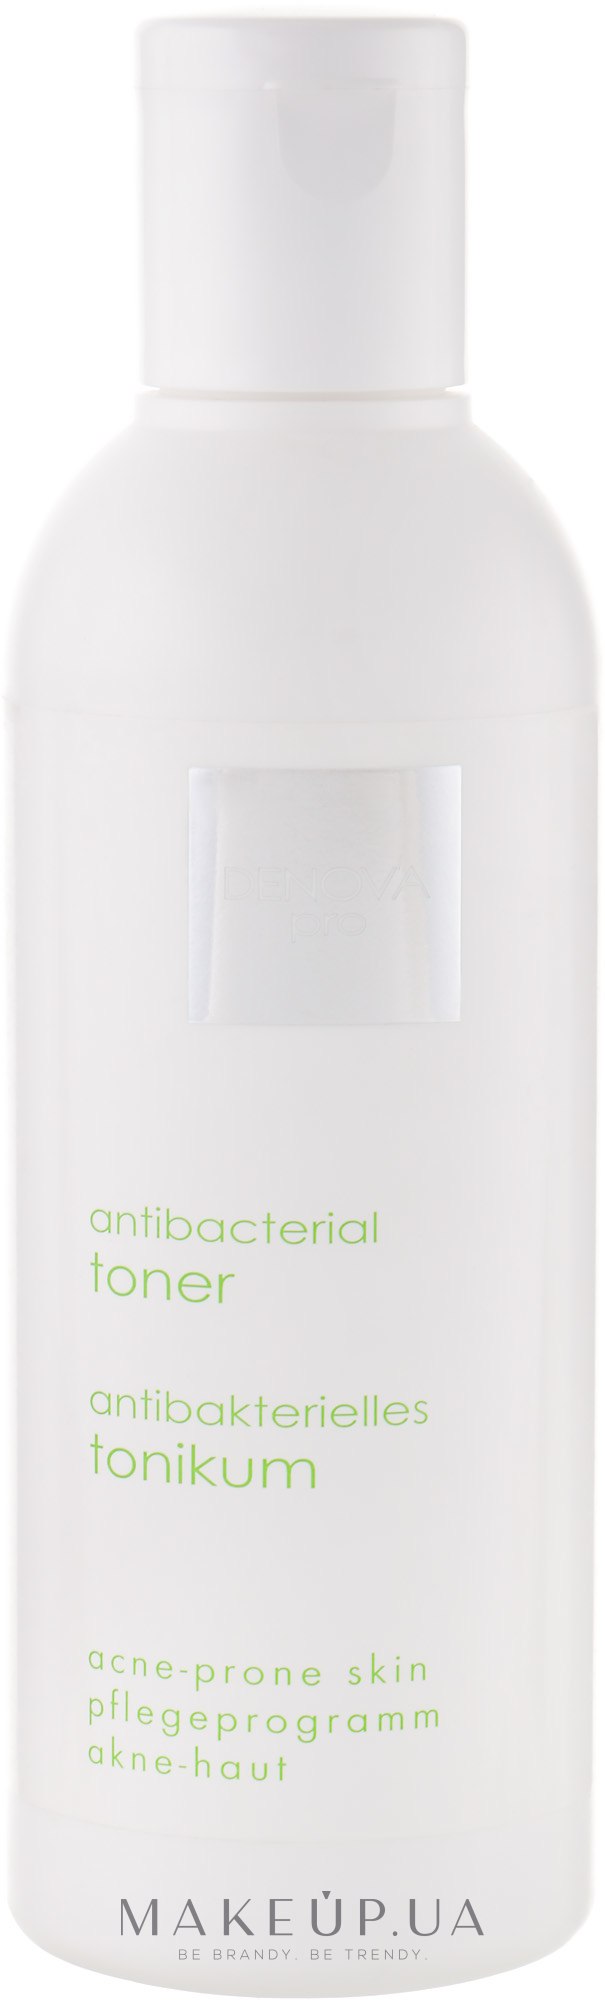 Антибактериальный тоник для кожи с акне - Denova Pro Acne-Prone Skin Antibacterial Toner — фото 200ml